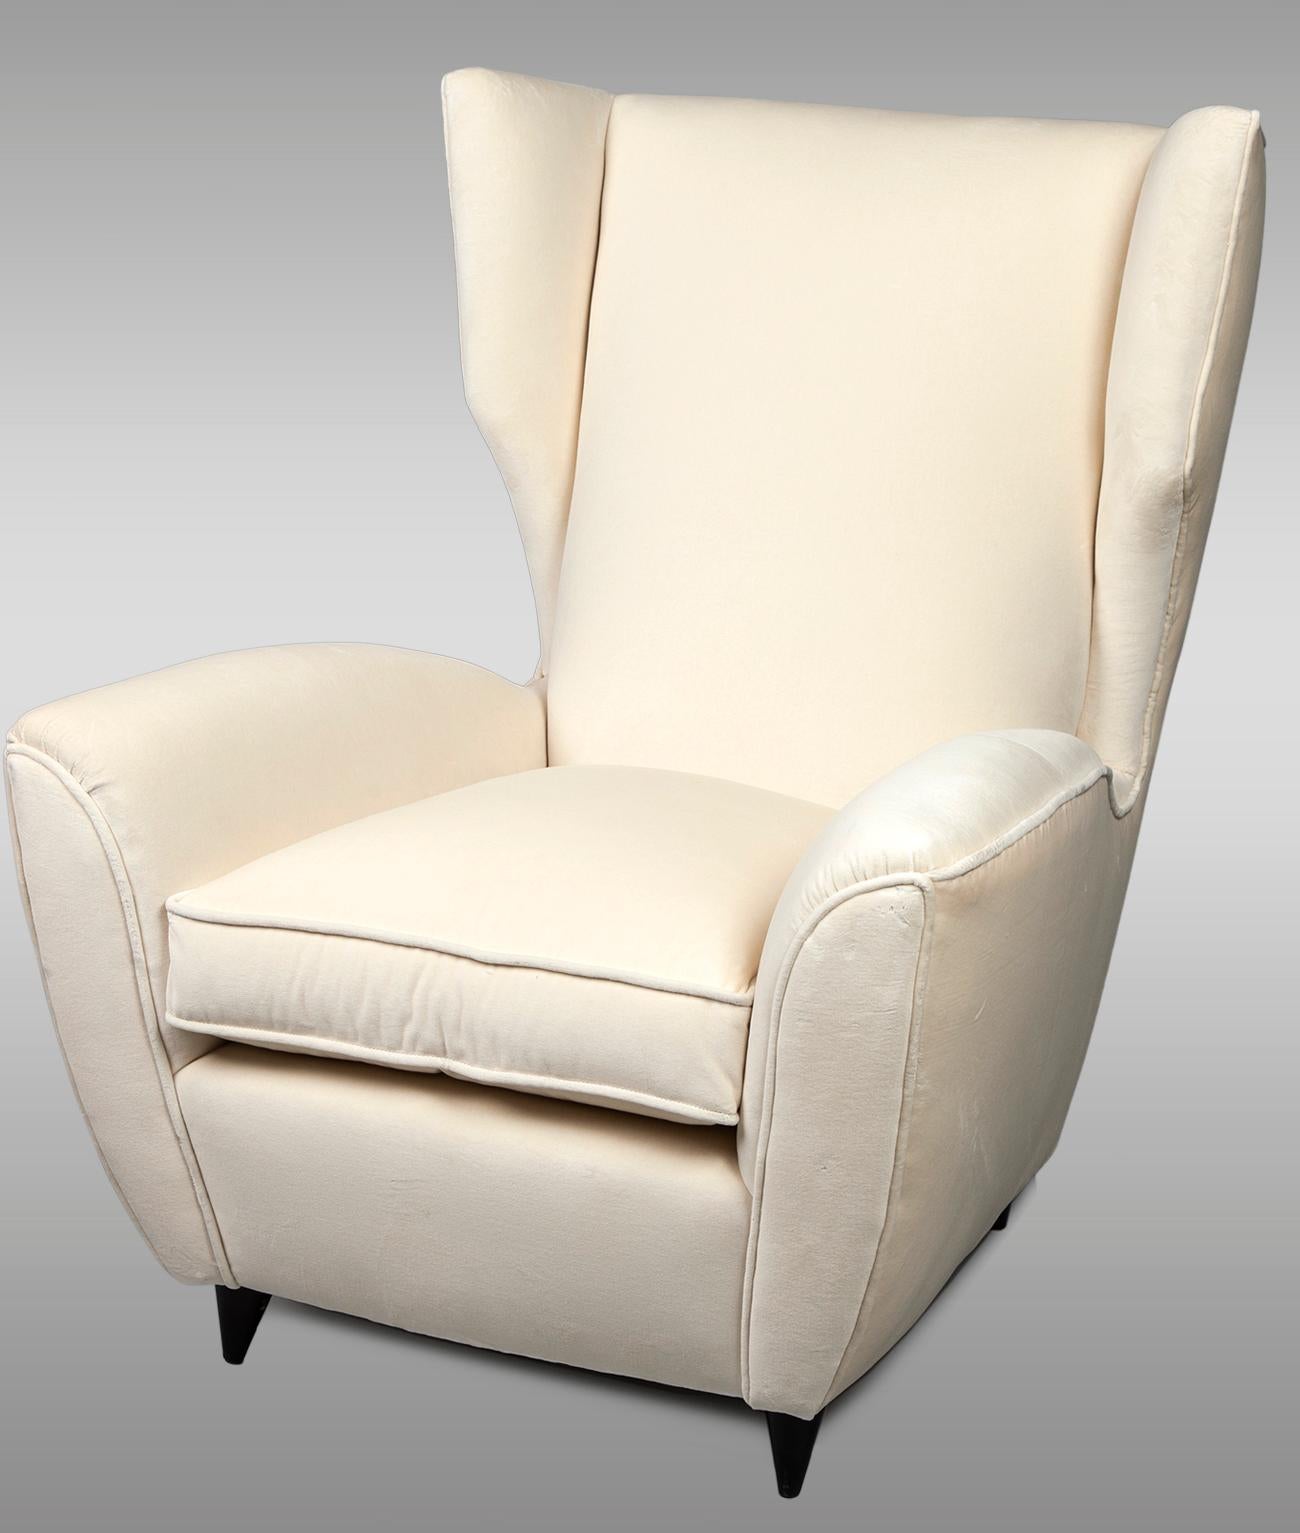 Zwei italienische Sessel mit hoher Rückenlehne von Melchiorre BEGA mit auffallend modernen Linien.
Bezogen mit elfenbeinfarbenem Samt,
um 1950.